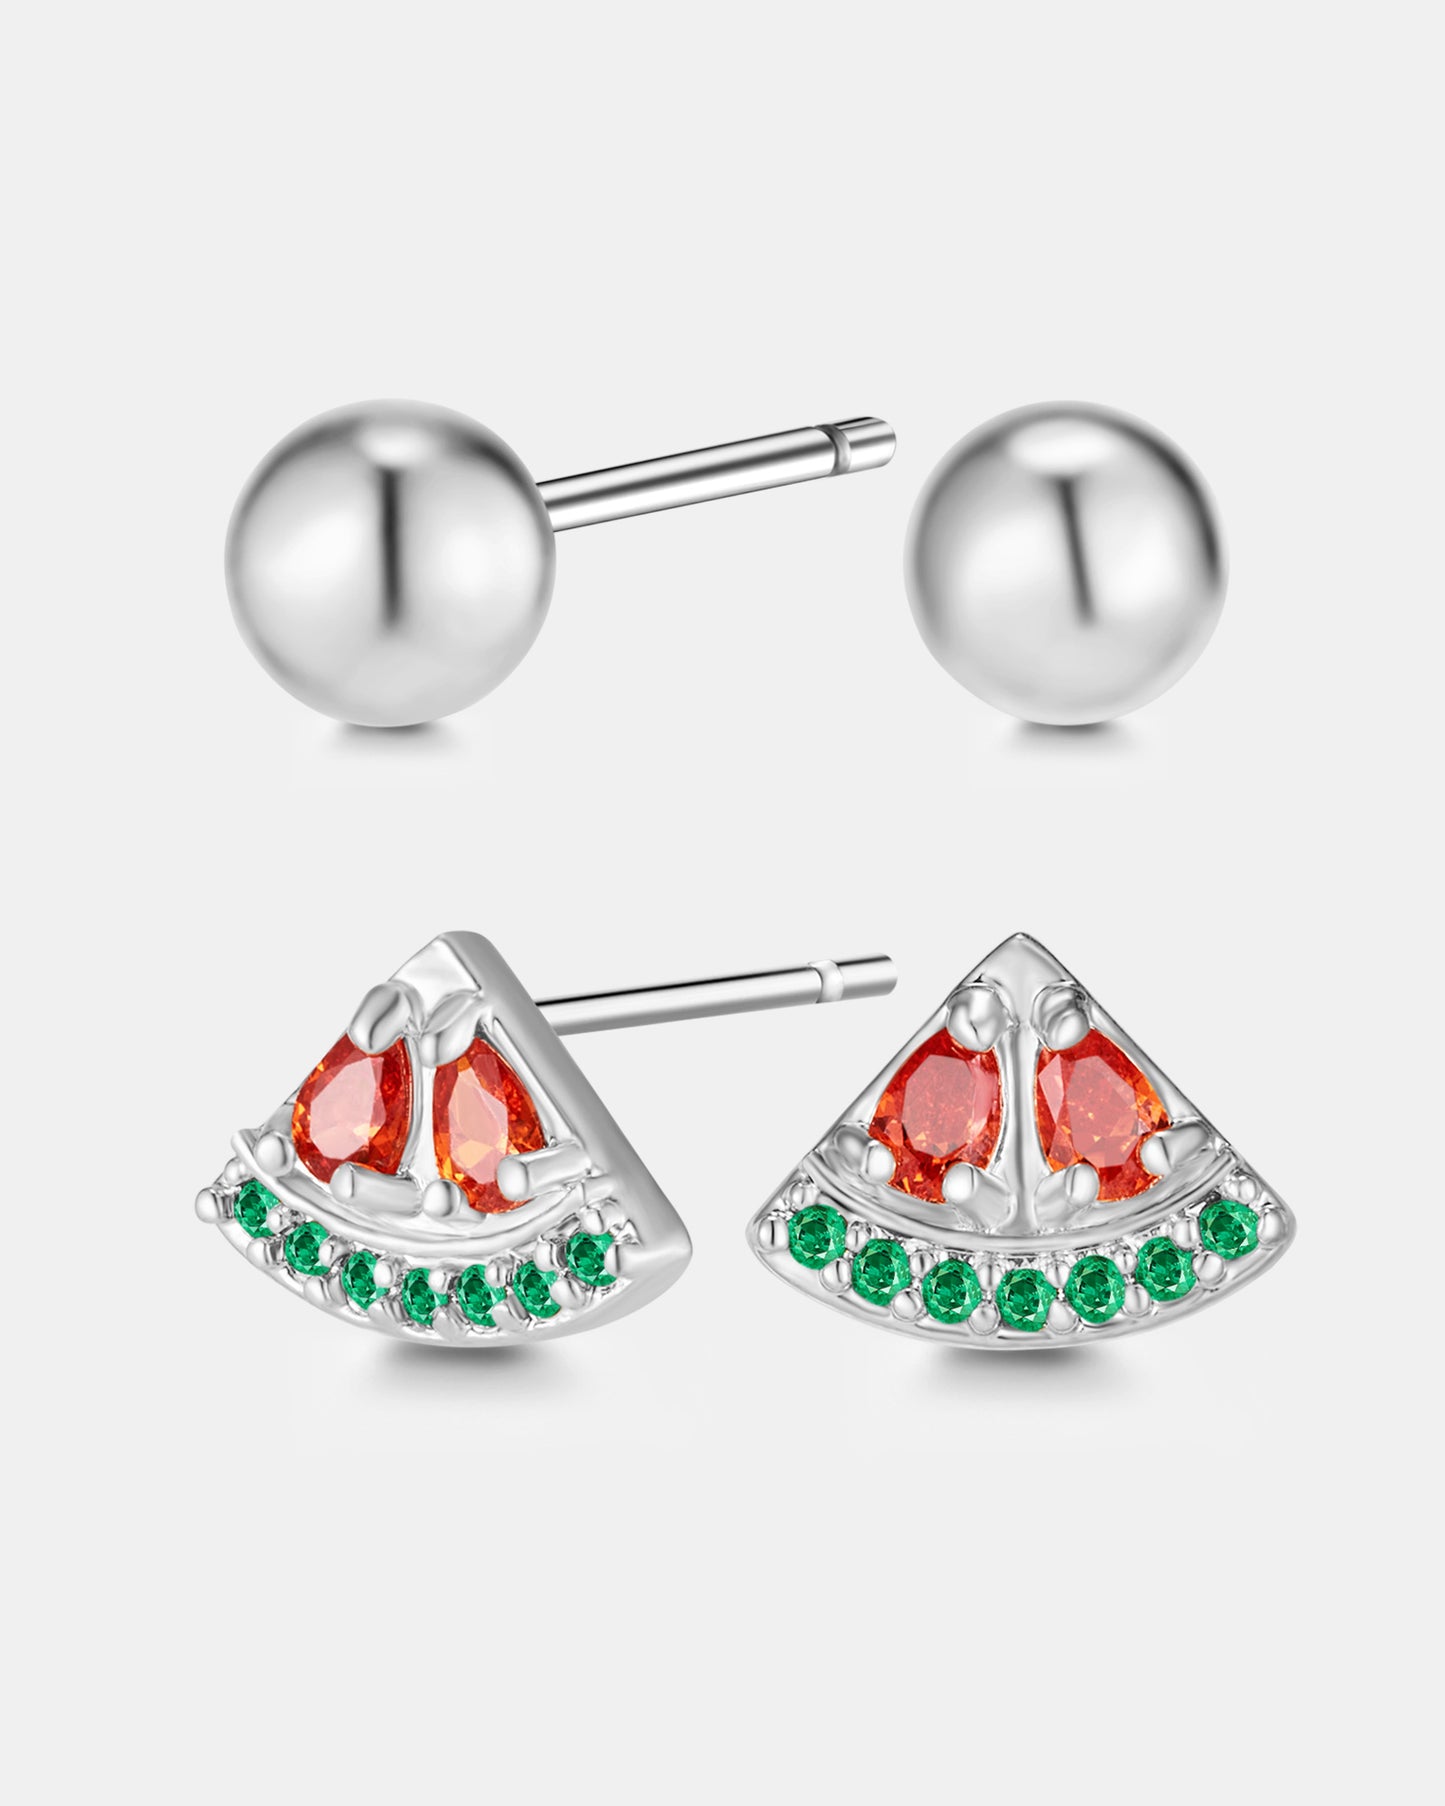 Wonderful Watermelon Earrings Set